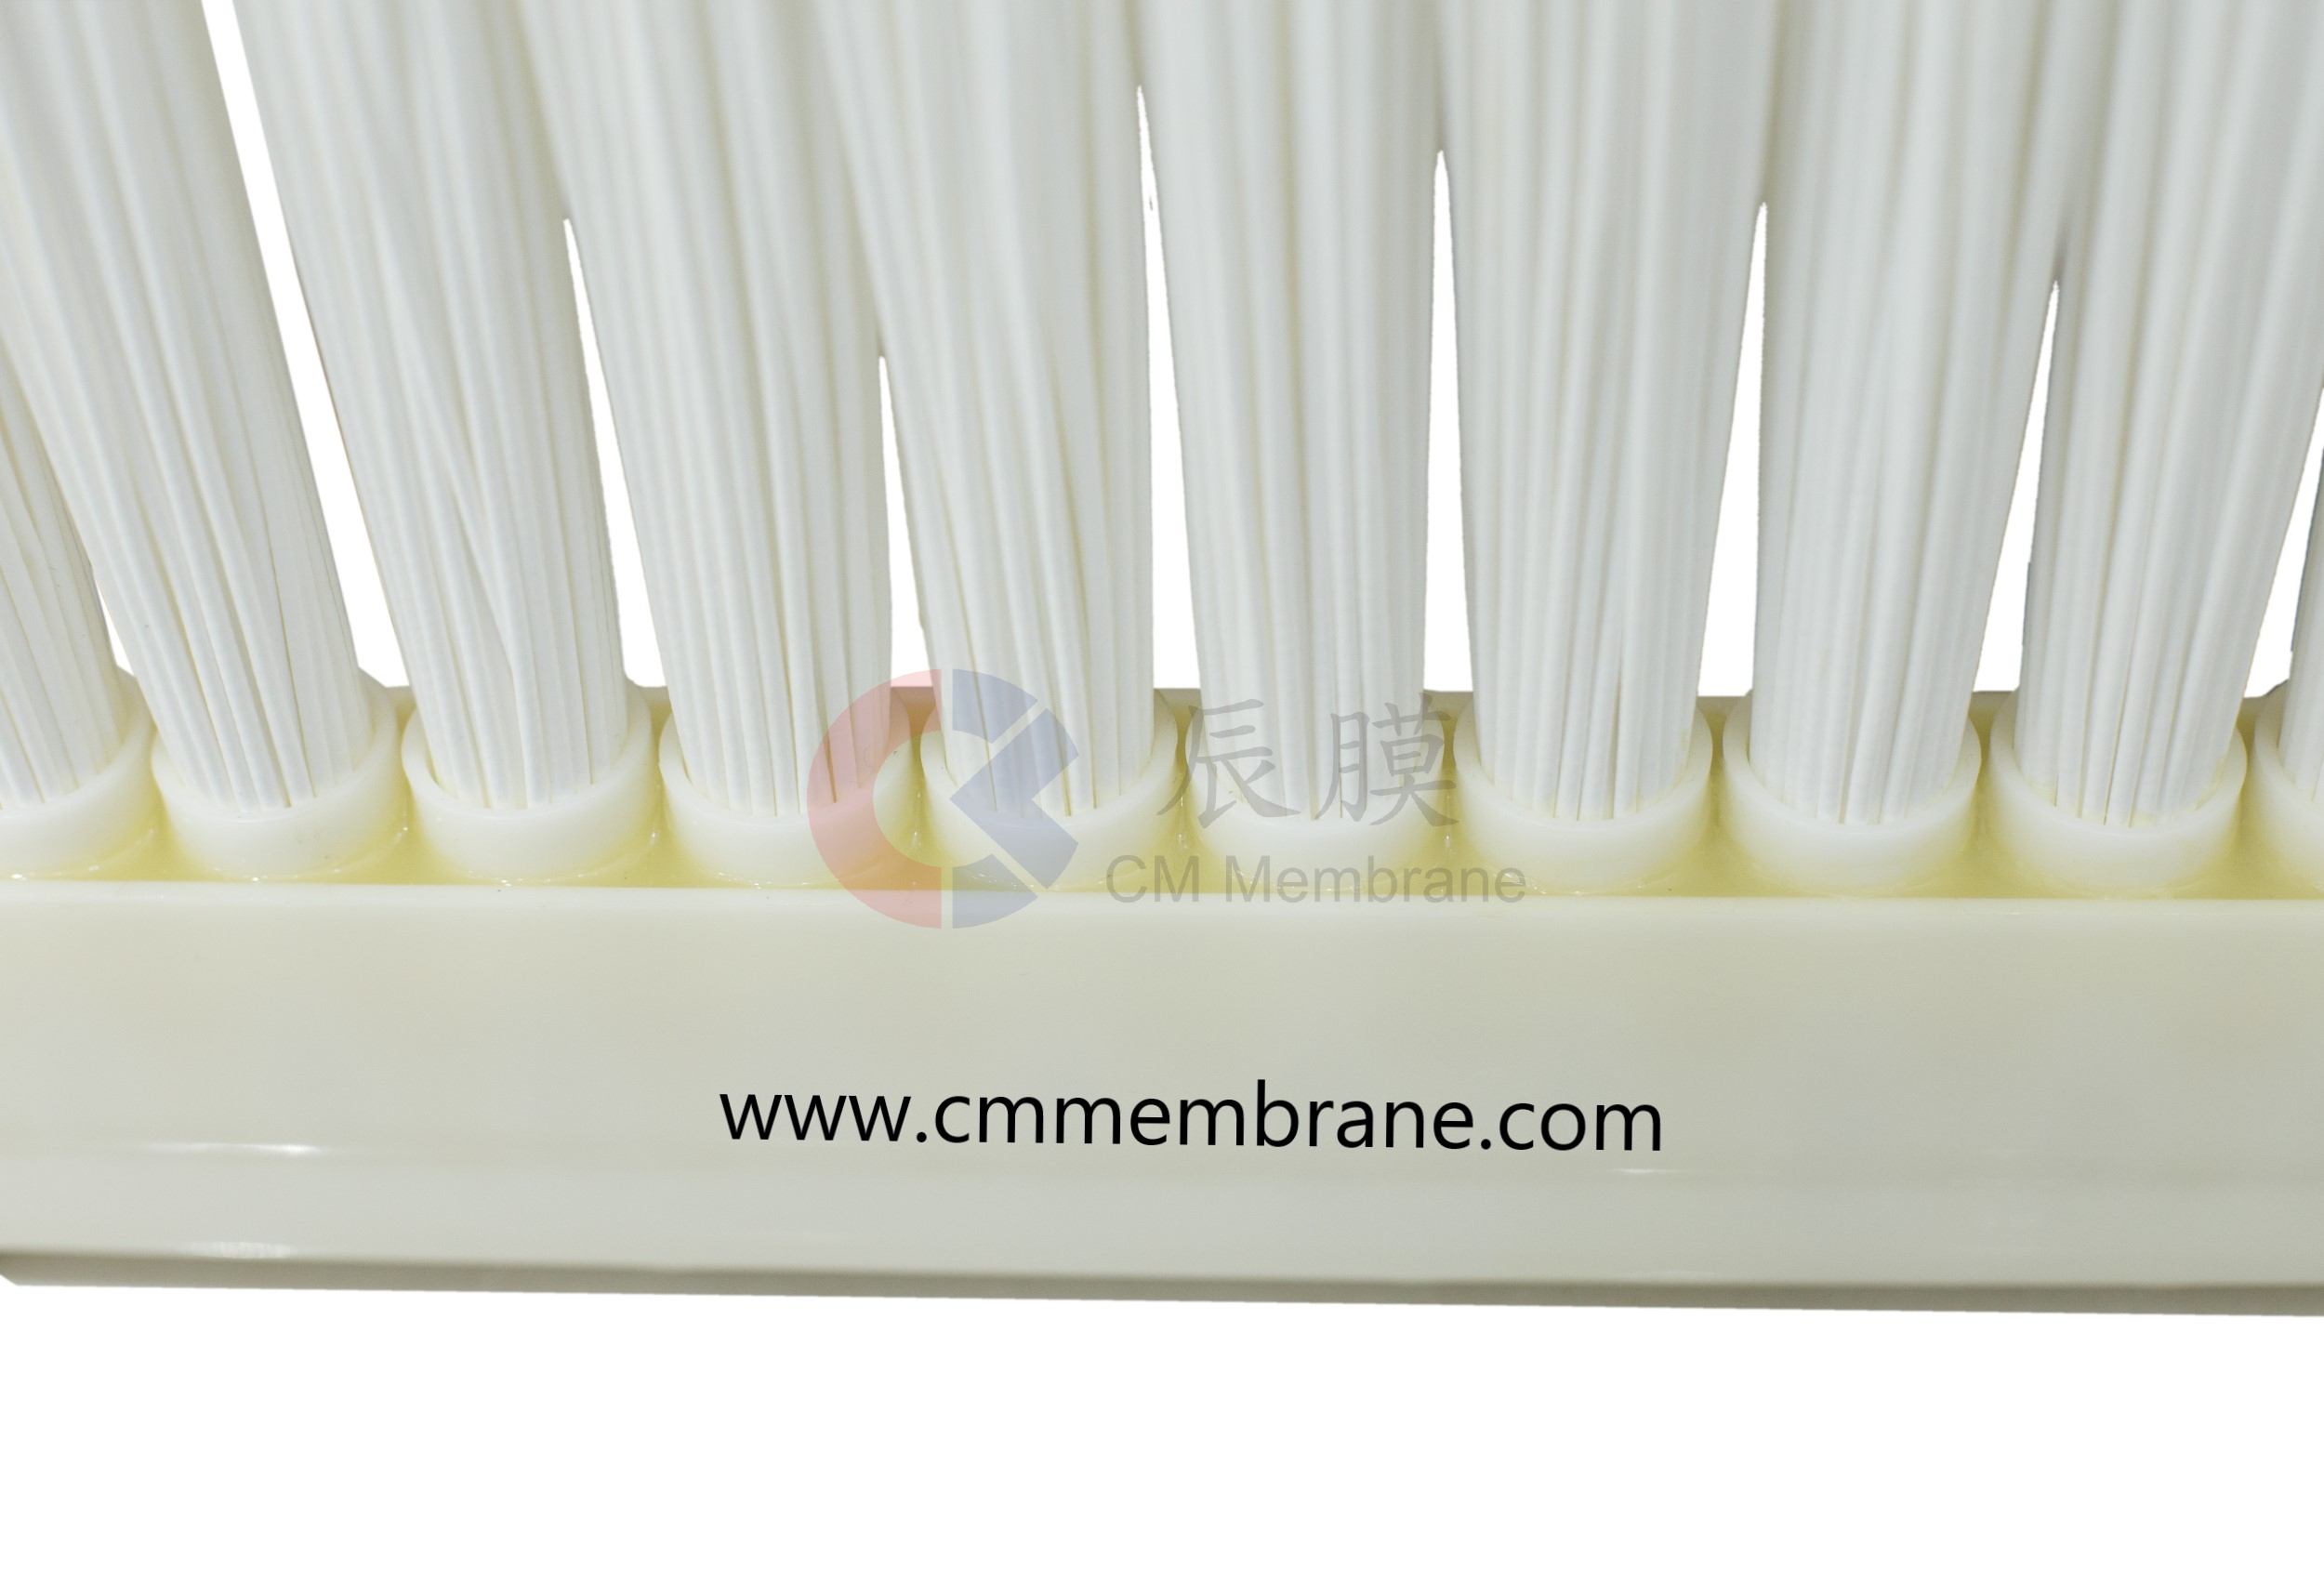 CM071/CM088 MBR membrane